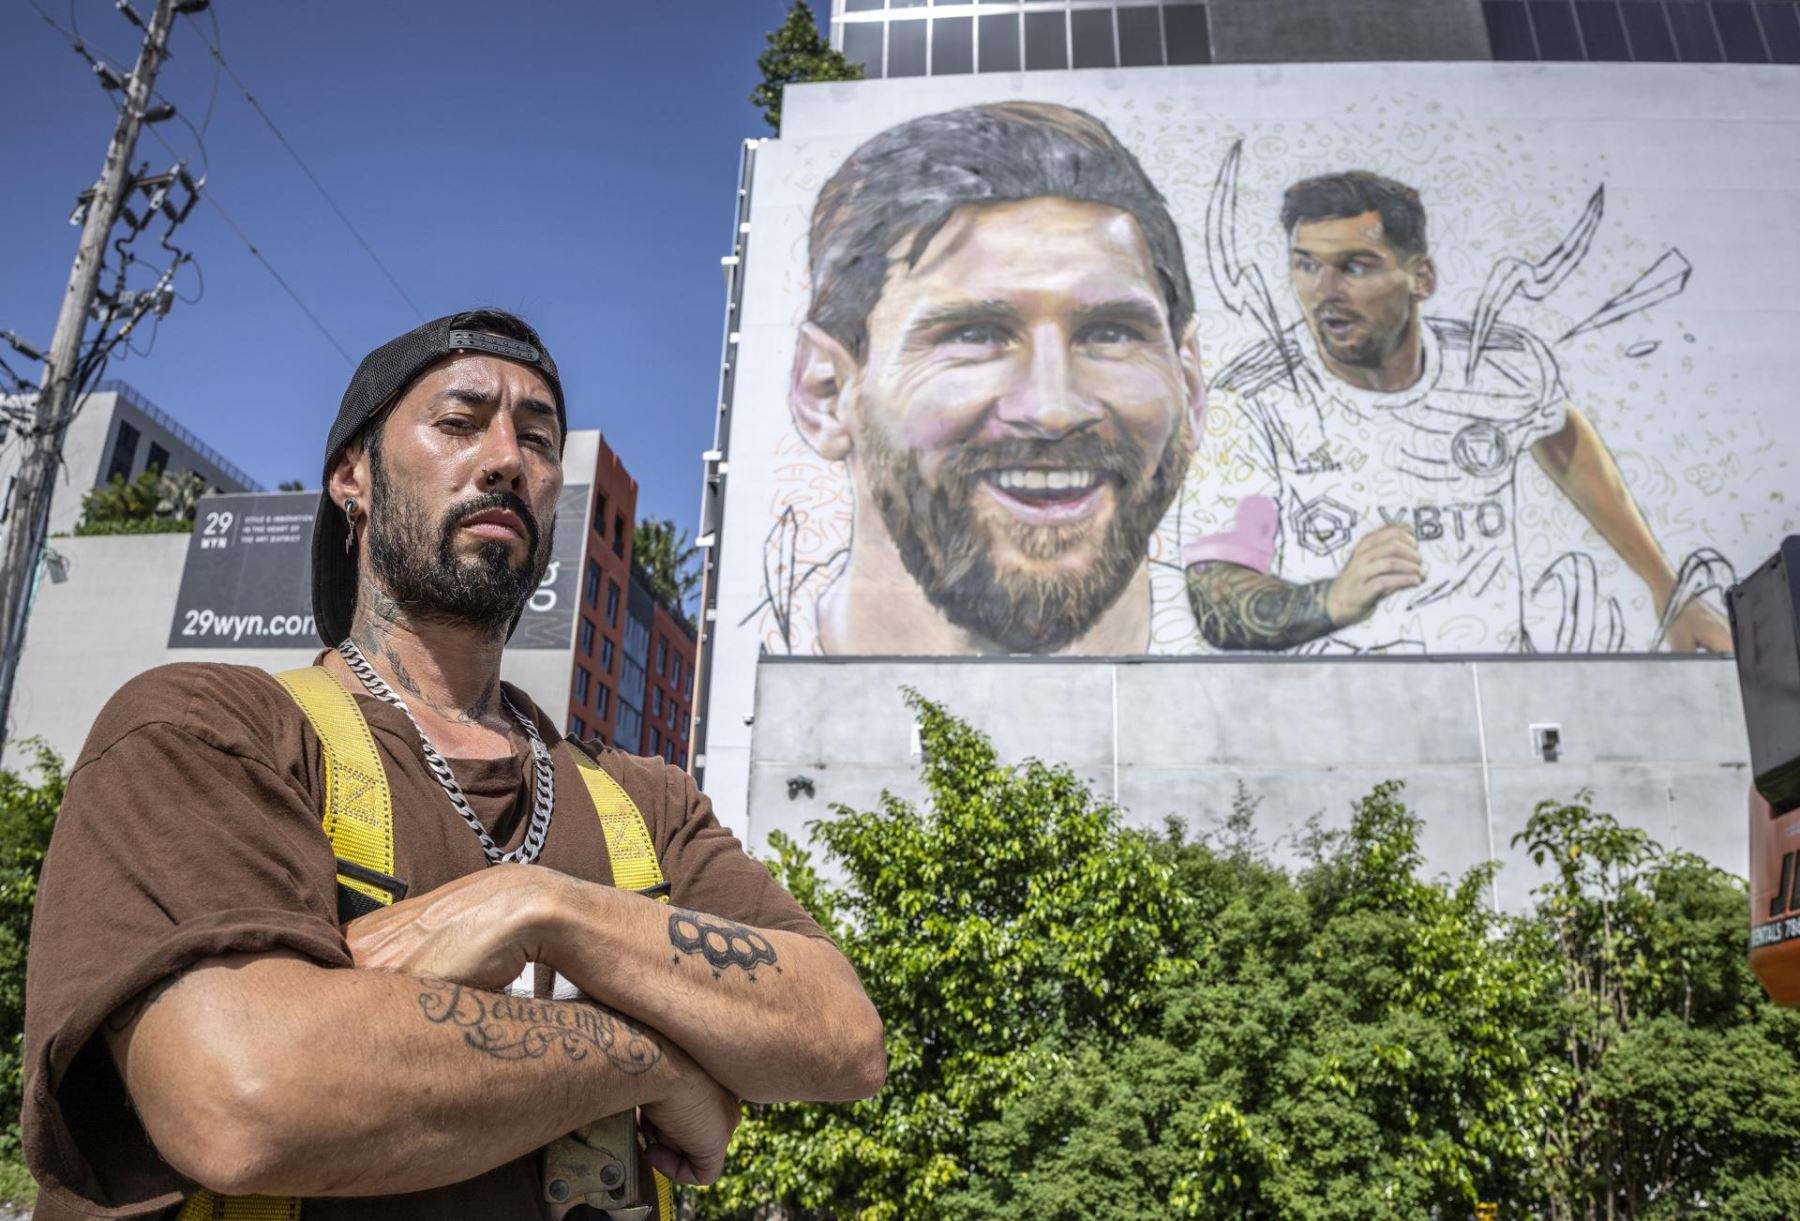 El artista argentino Maximiliano Bagnasco posa frente a un mural de su compatriota Lionel Messi que pinta en un muro de siete pisos en Wynwood, Florida, EE.UU.
Foto: EFE